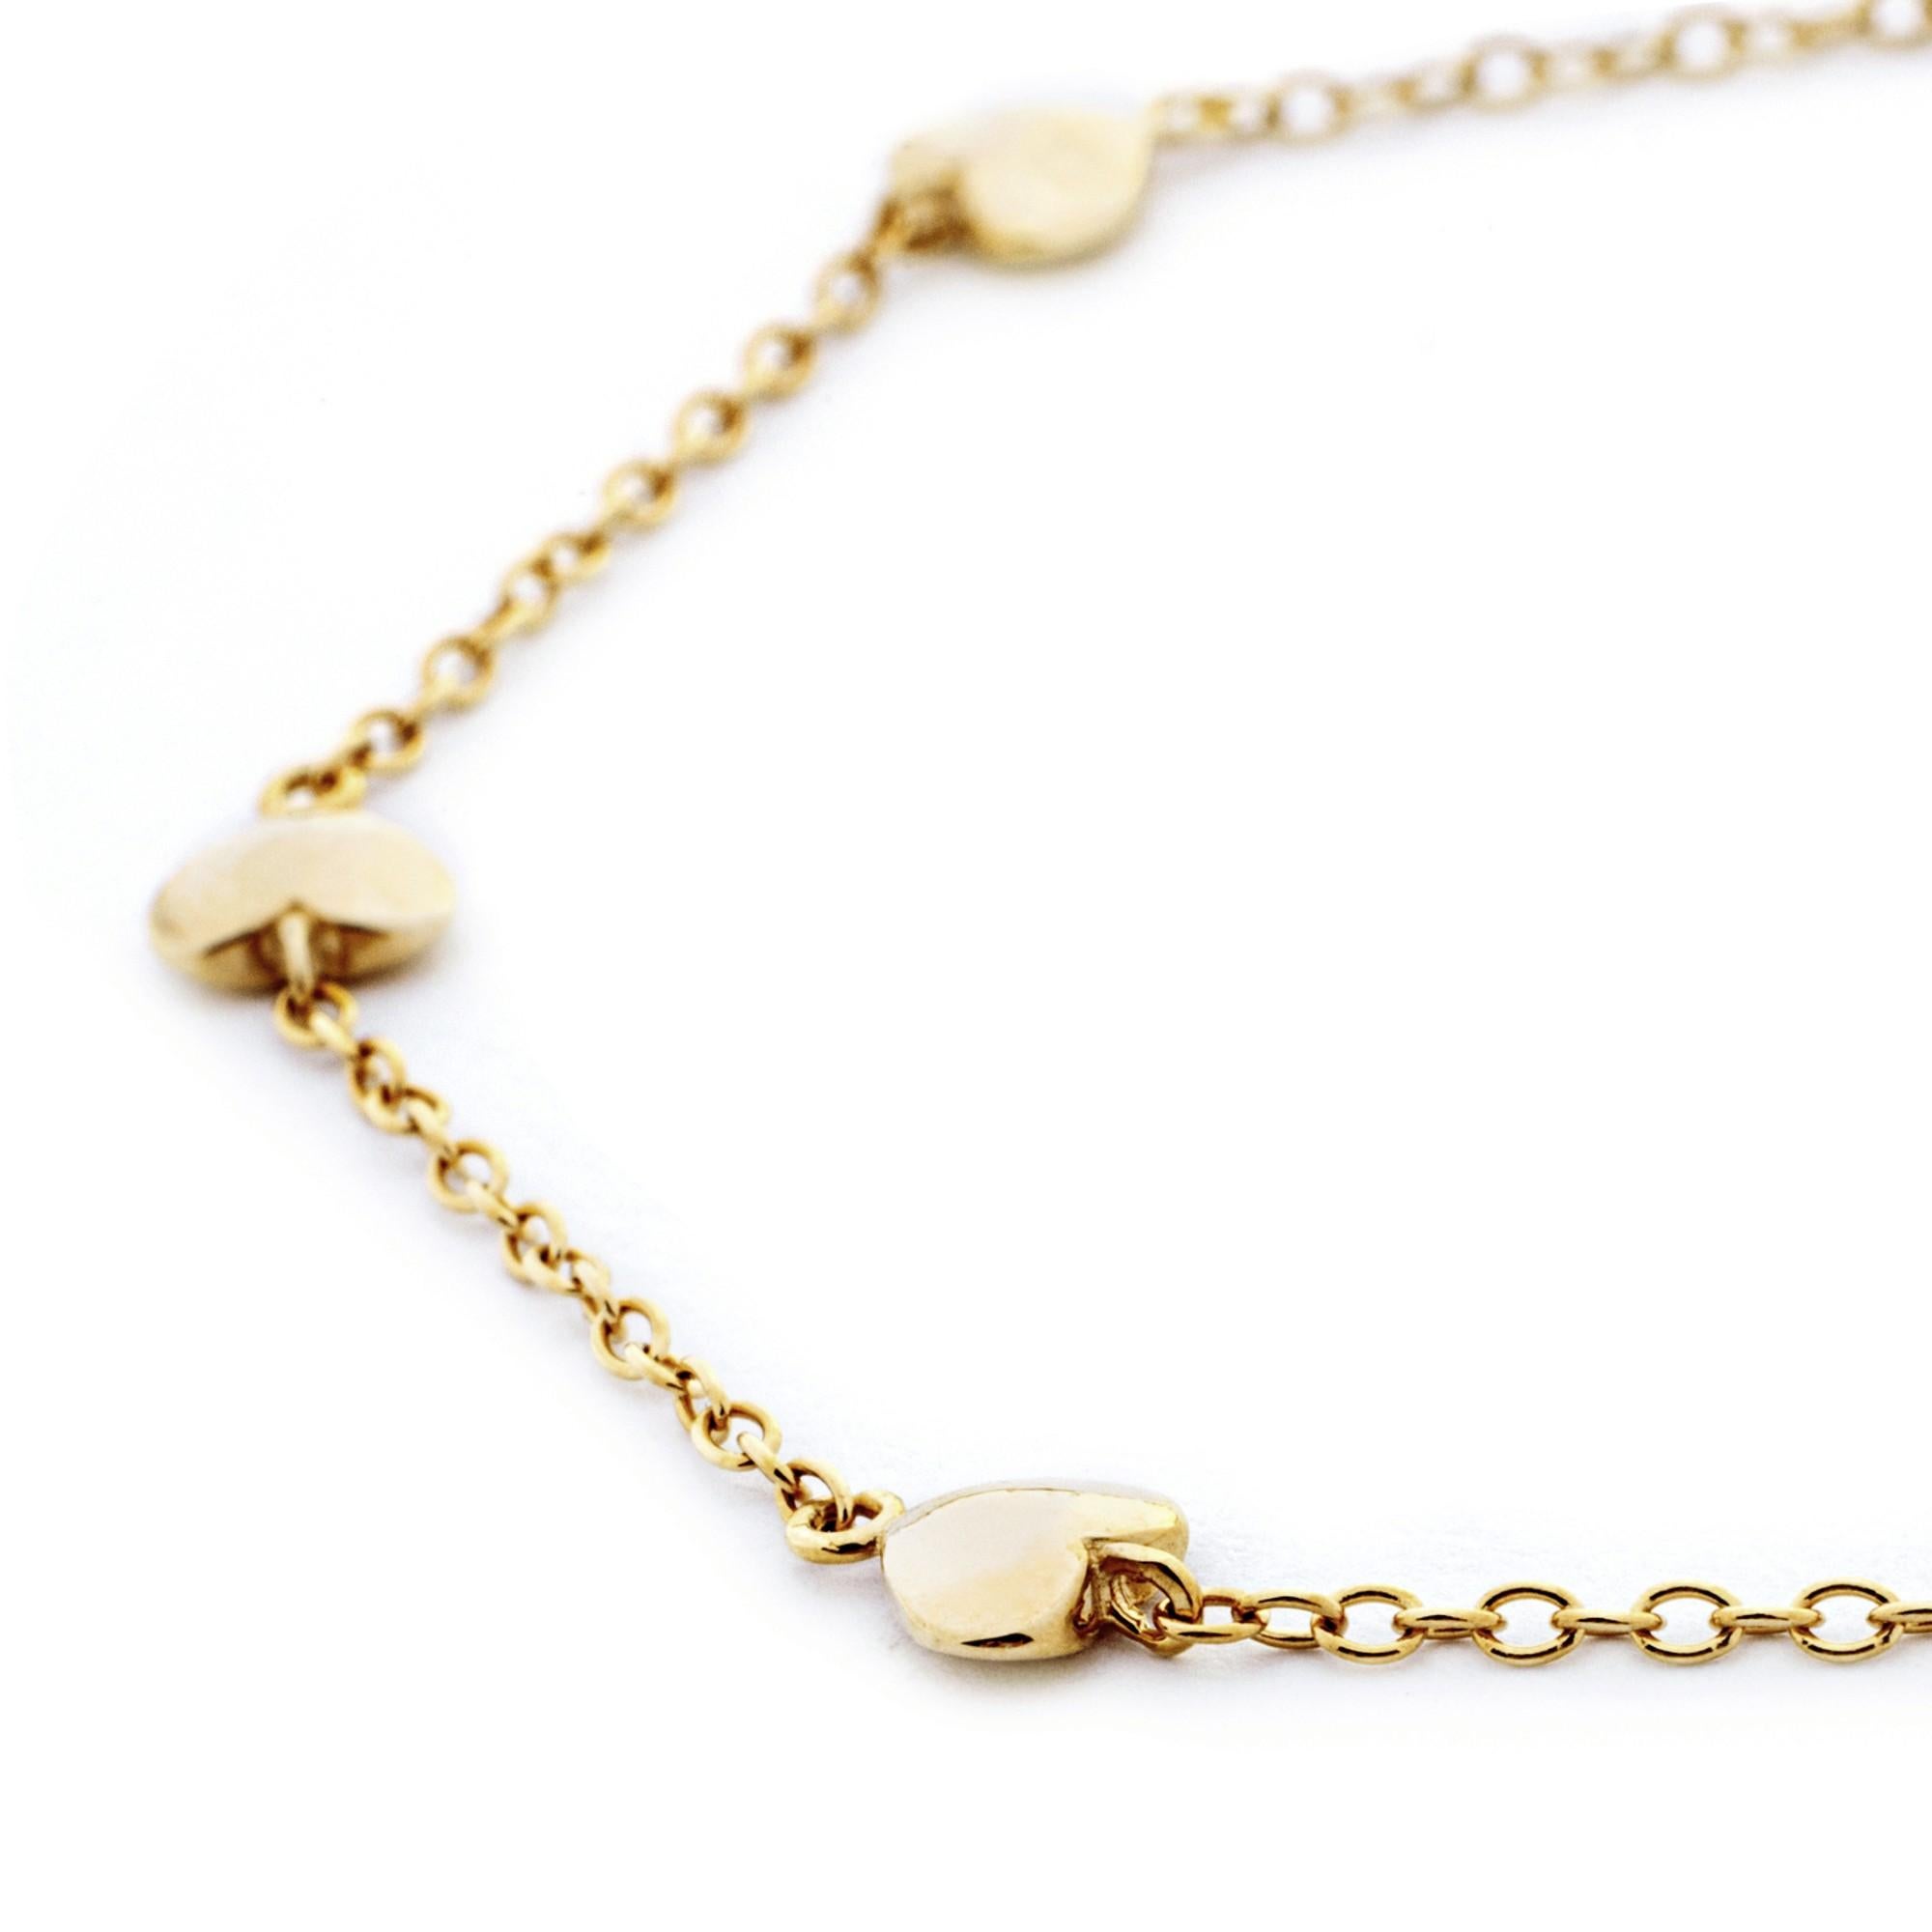 Collection Design/One d'Alex Jona, fabrication artisanale en Italie, bracelet à chaîne en forme de cœur en or jaune 18 carats.

Les bijoux Alex Jona se distinguent, non seulement par leur design particulier et par l'excellente qualité des pierres